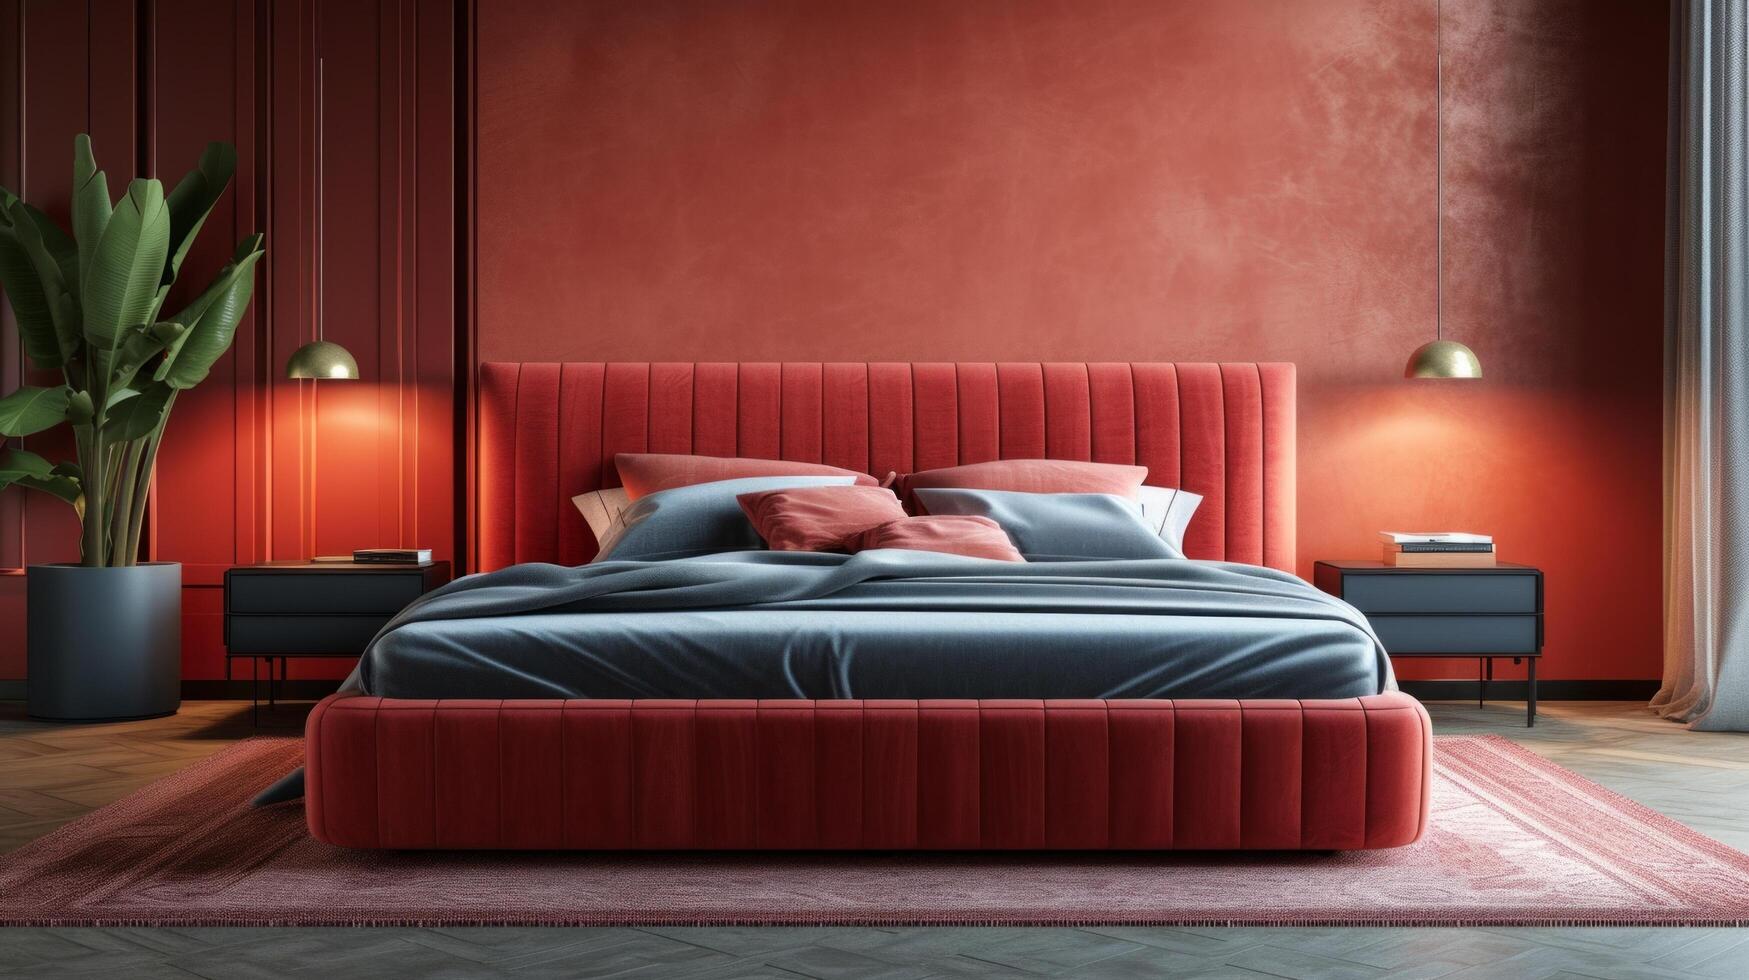 ai generiert tief gefärbt Samt Betten hinzufügen ein Luft von Romantik und Luxus zu modern Schlafzimmer Dekor foto